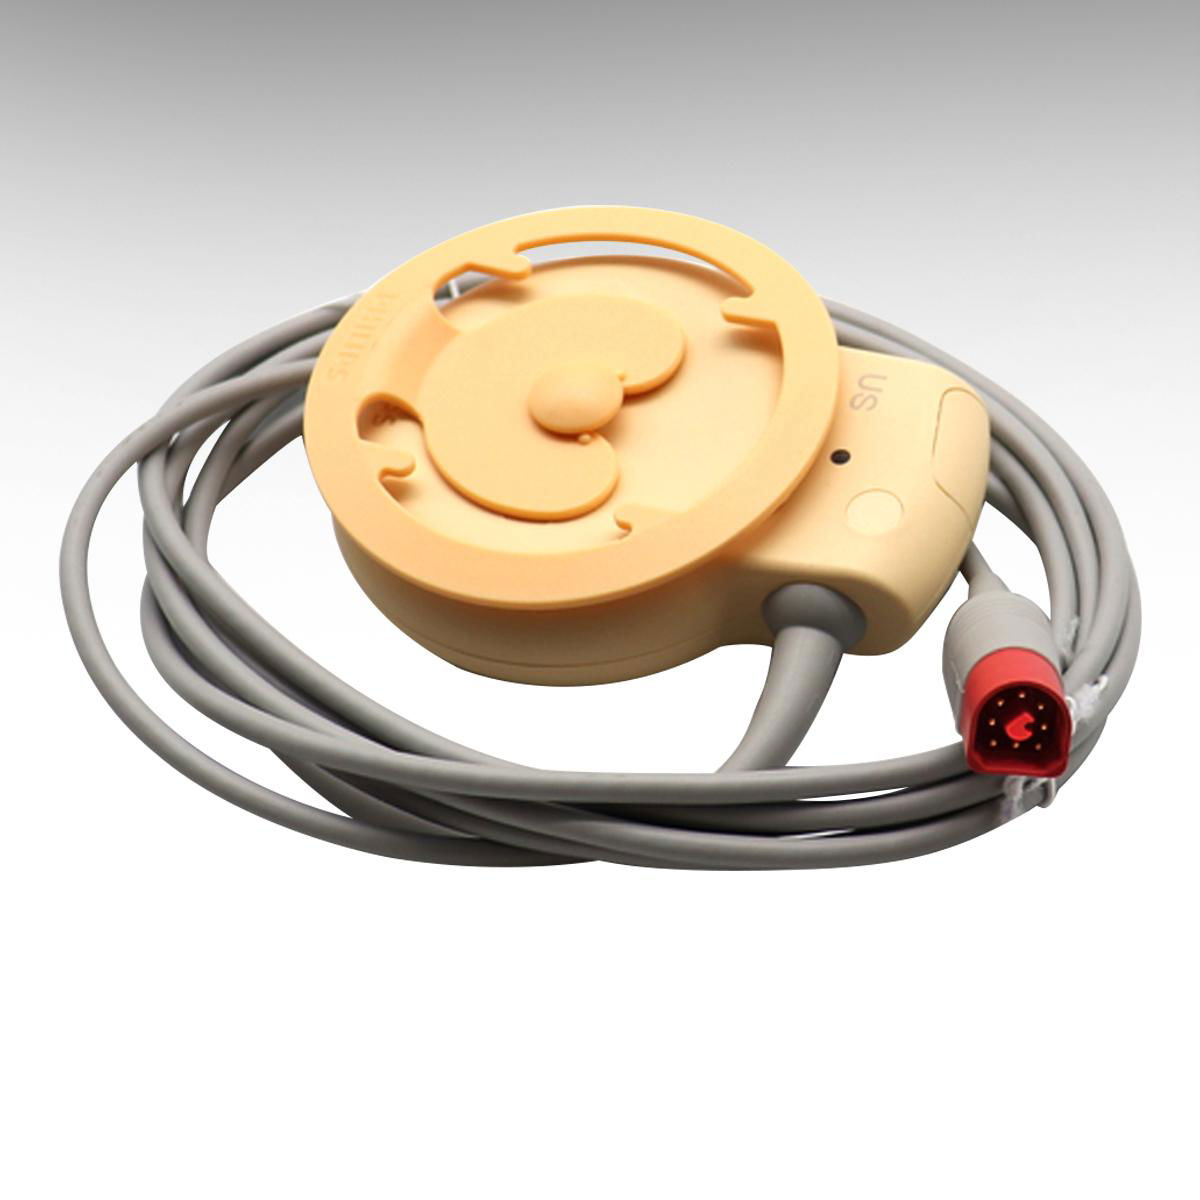 原裝飛利浦母嬰孕婦胎儿心率監護儀配件8針防水US探頭M2736A 4